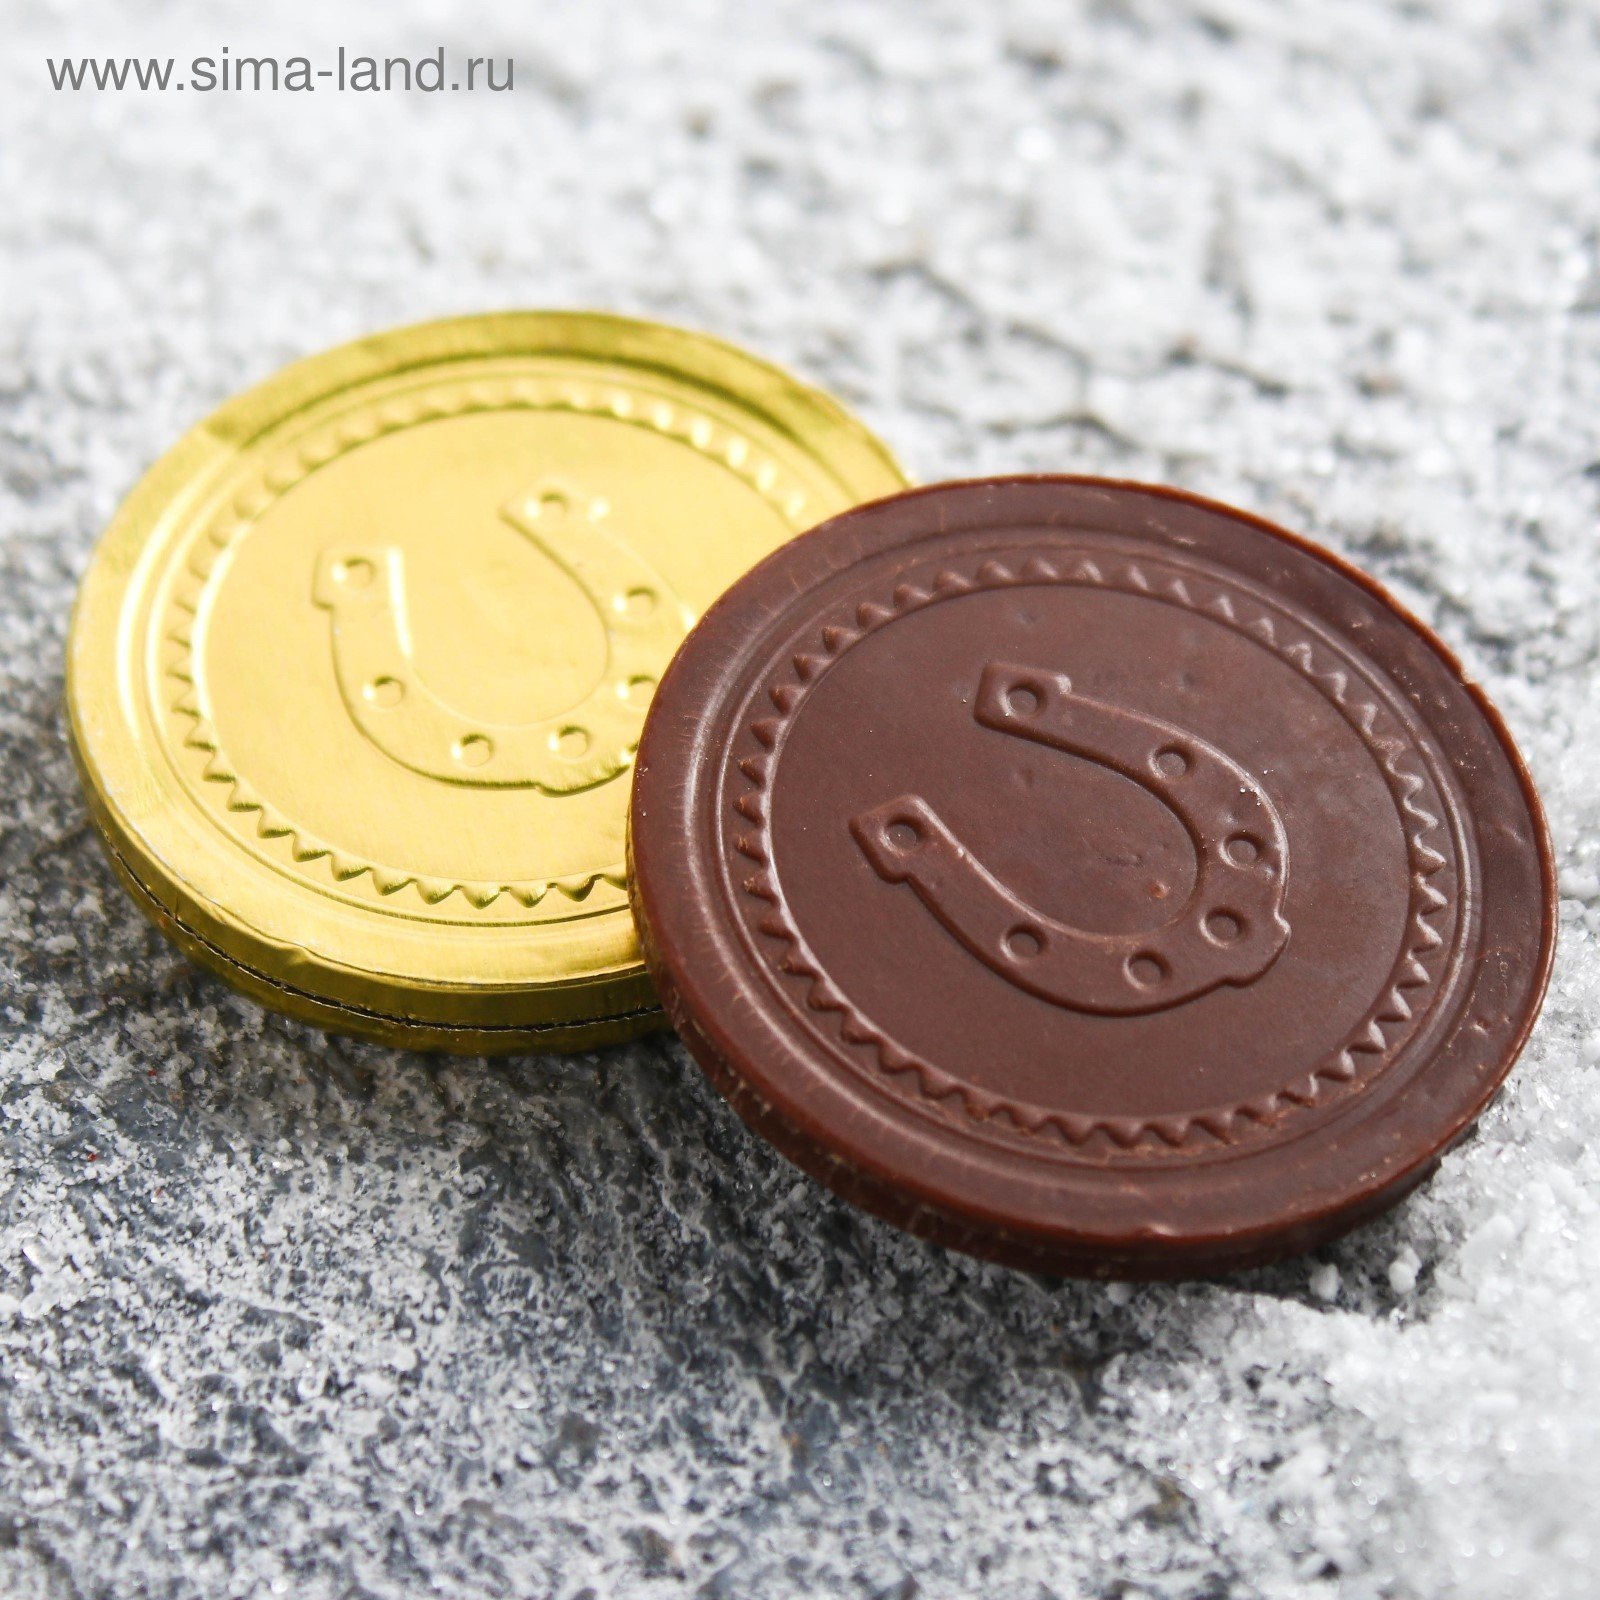 Шоколадка монета. Шоколадные монетки. Конфеты в монетке. Шоколад Монетка. Шоколадка Монетка.